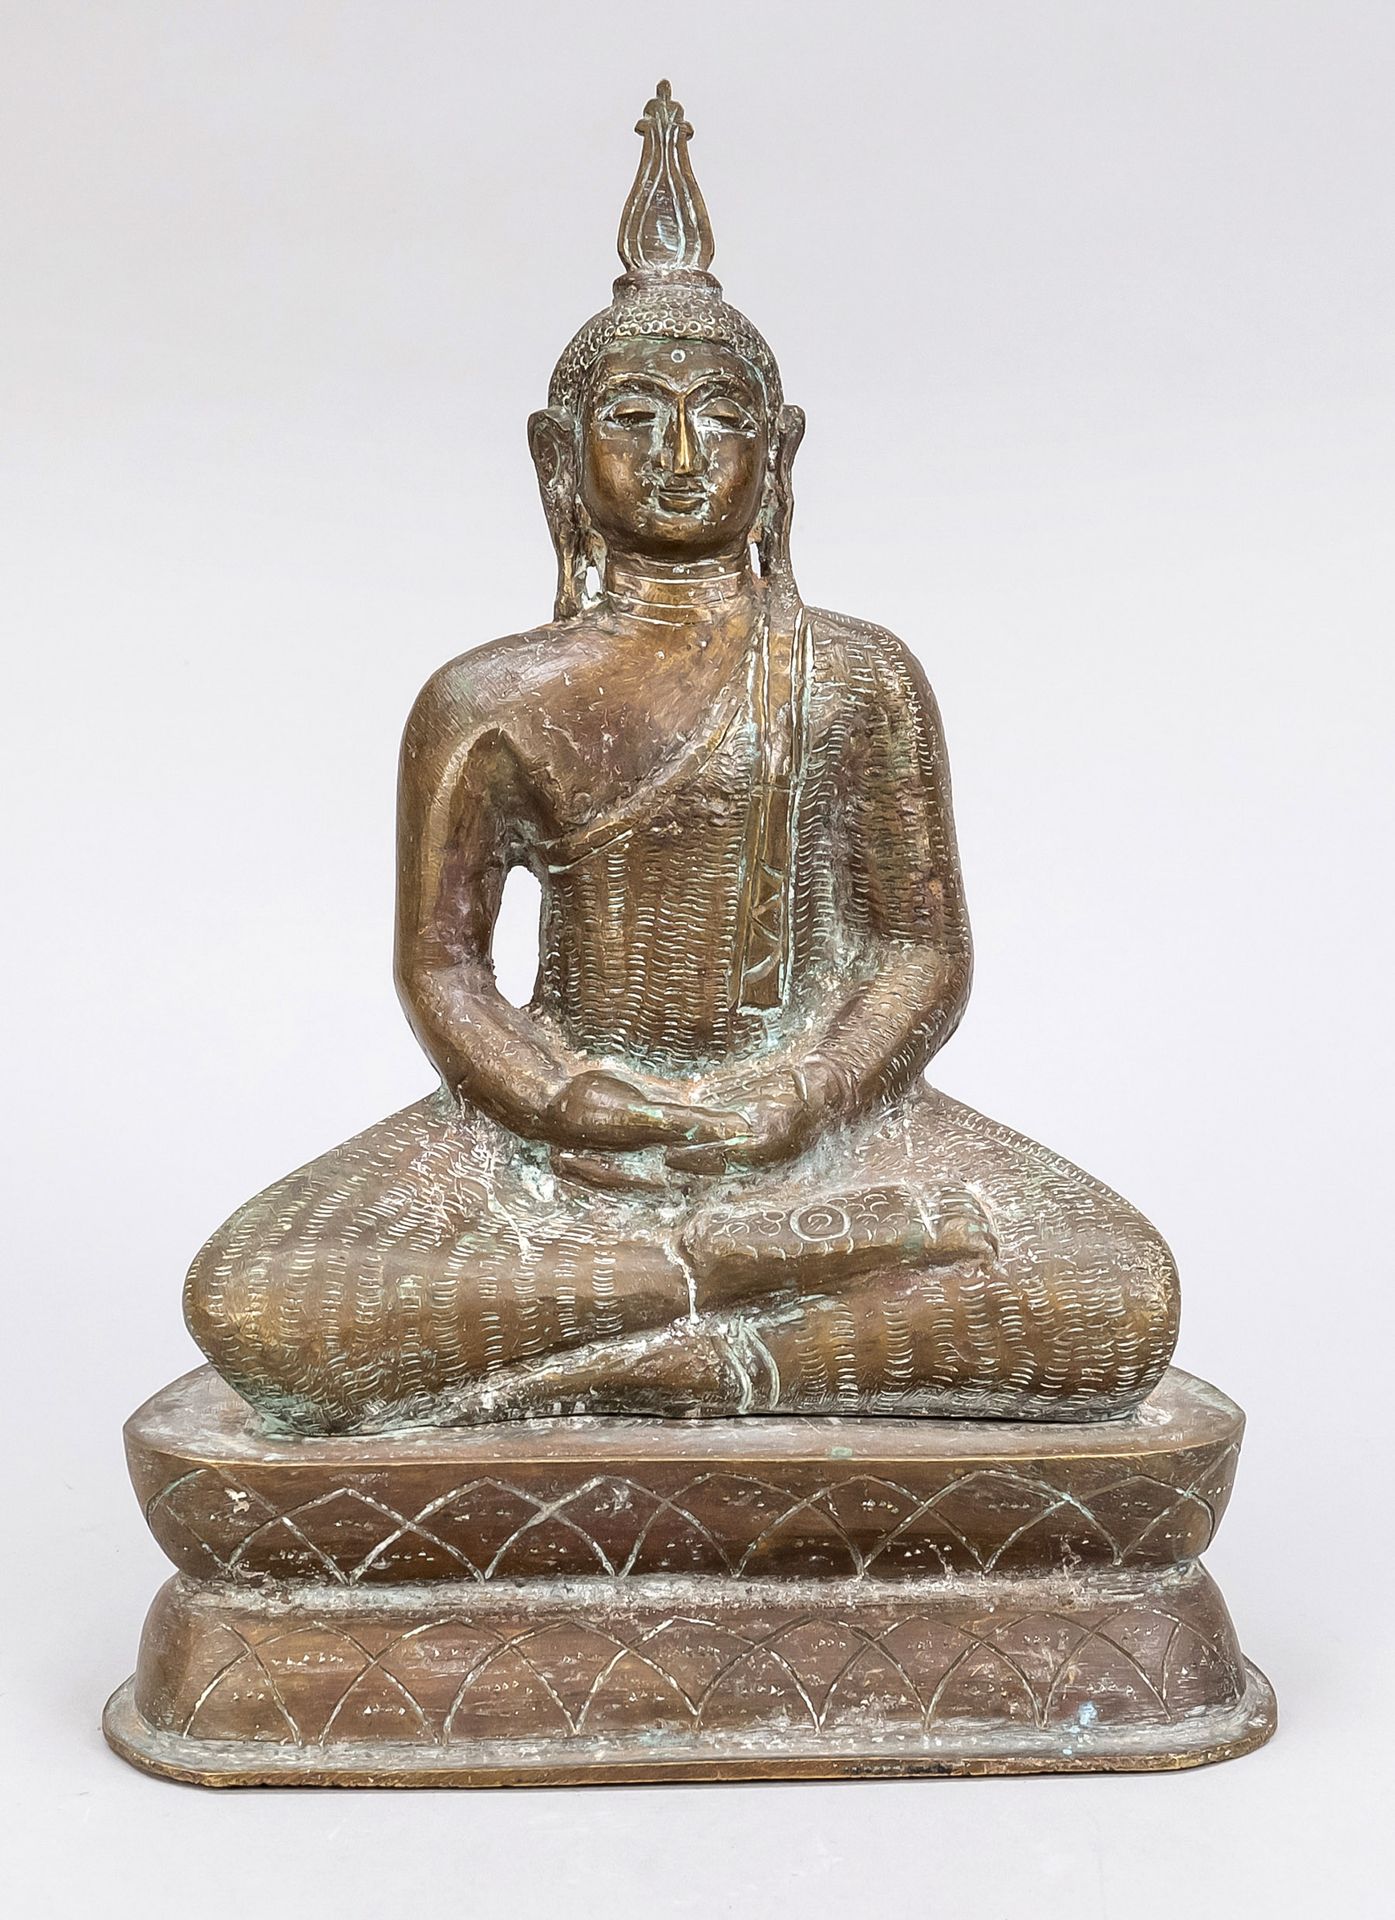 Null 佛，东南亚，青铜。坐在双莲座上，部分装饰为雕刻，高28厘米。